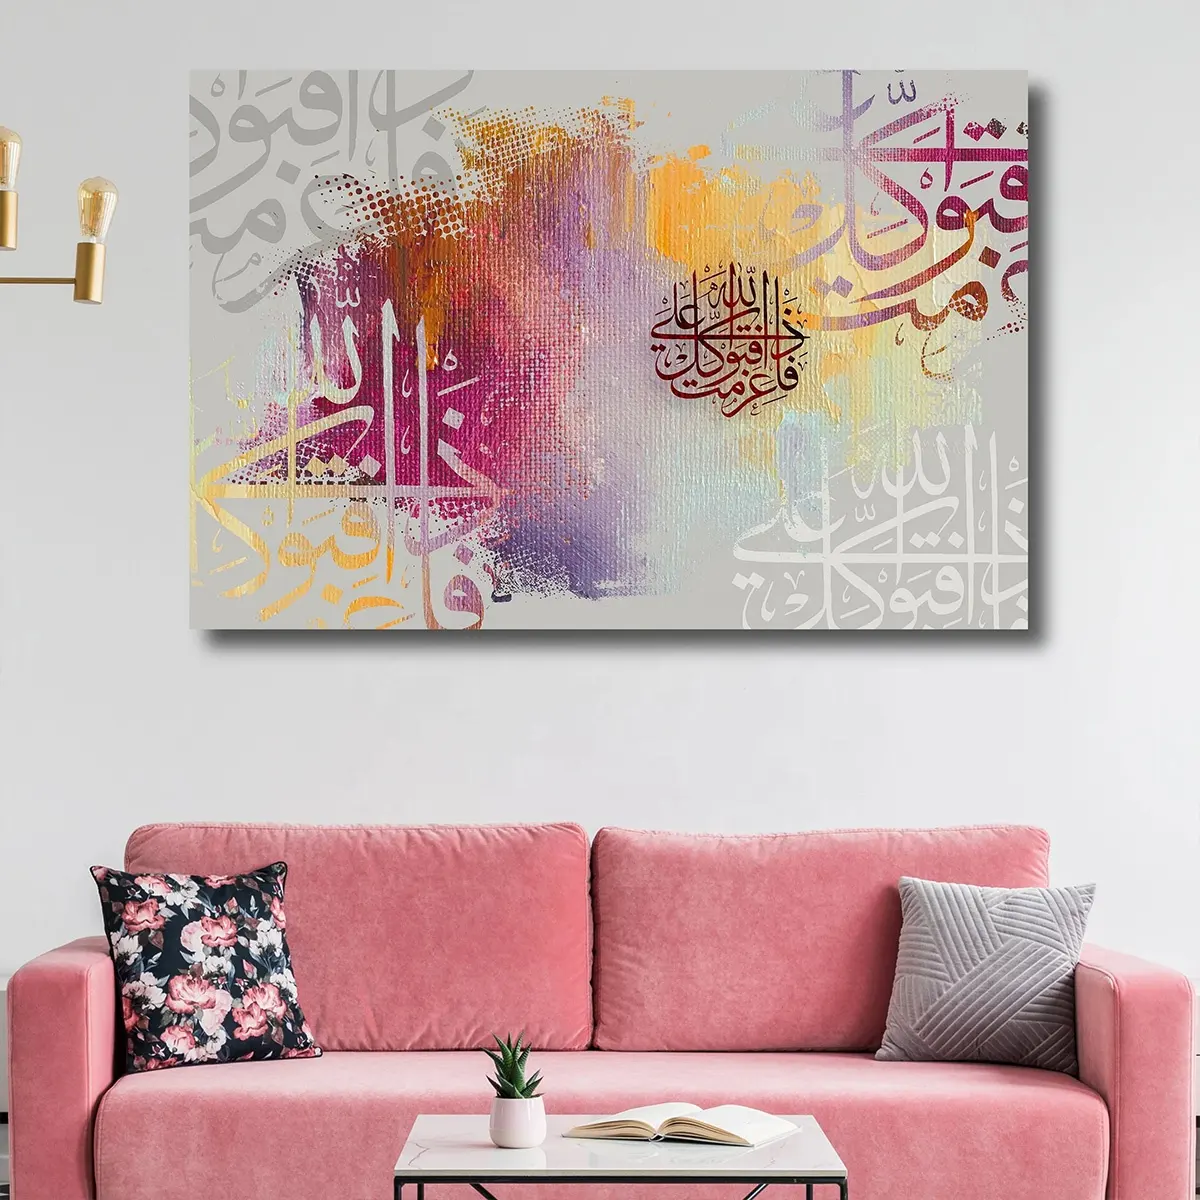 Art mural de calligraphie arabe peintures en verre cristal design coloré décoration murale moderne décor arabe art islamique moderne